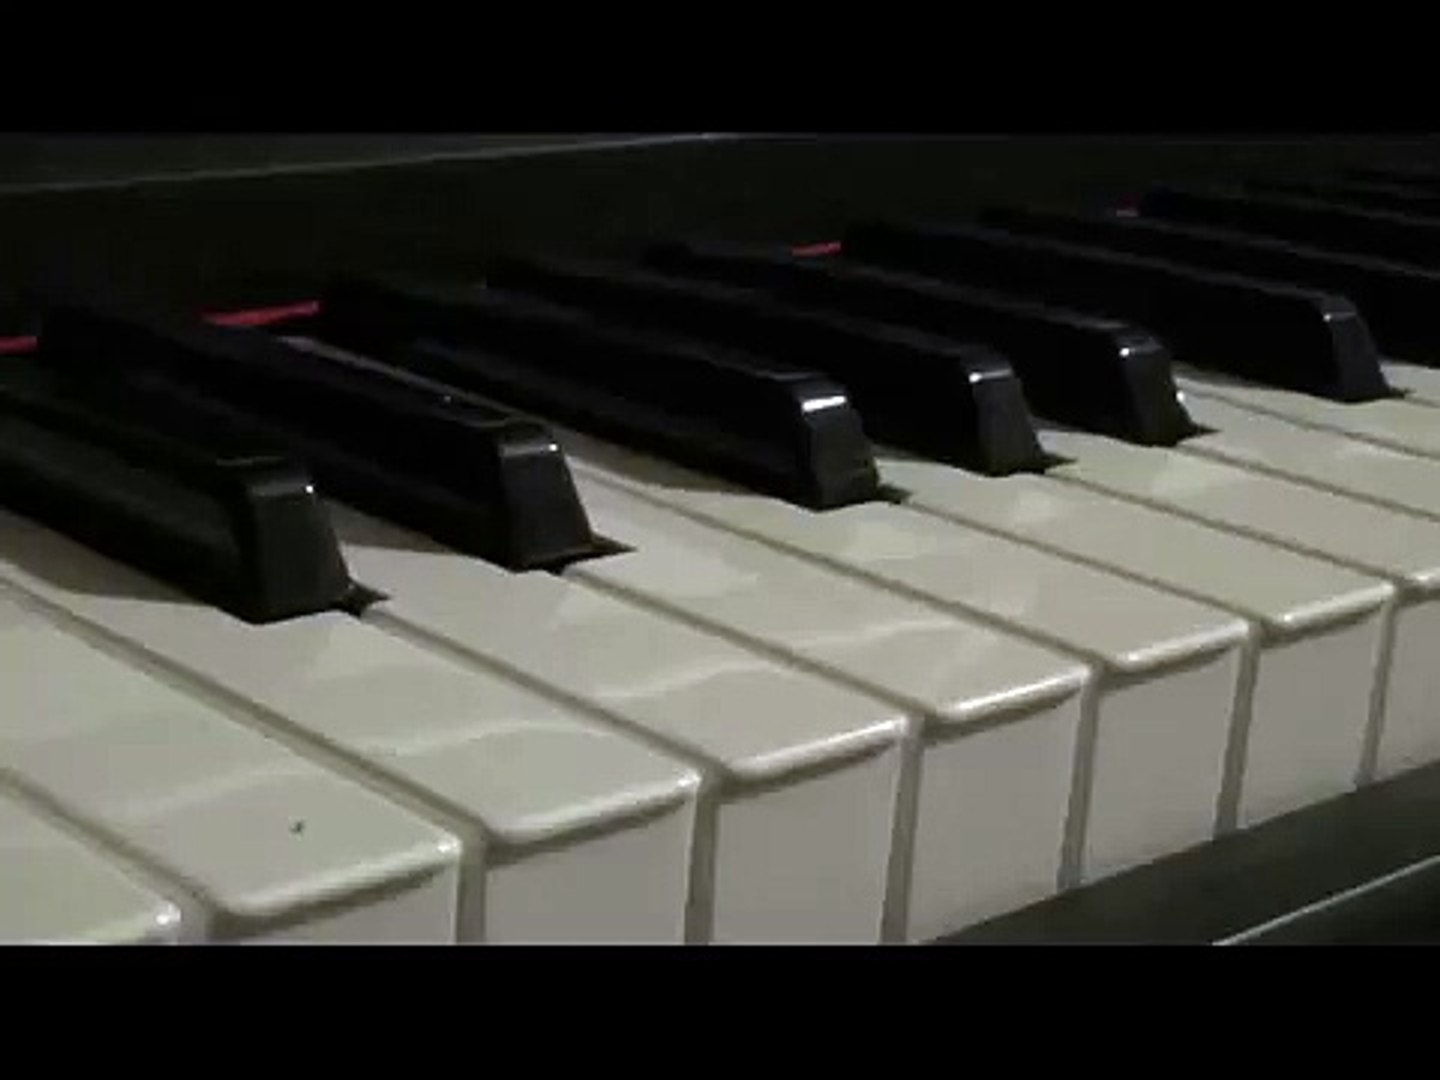 ⁣MUSICA ROMANTICA INSTRUMENTAL PIANO, MUSICA PIANO ROMANTICA, MUSICA 2015